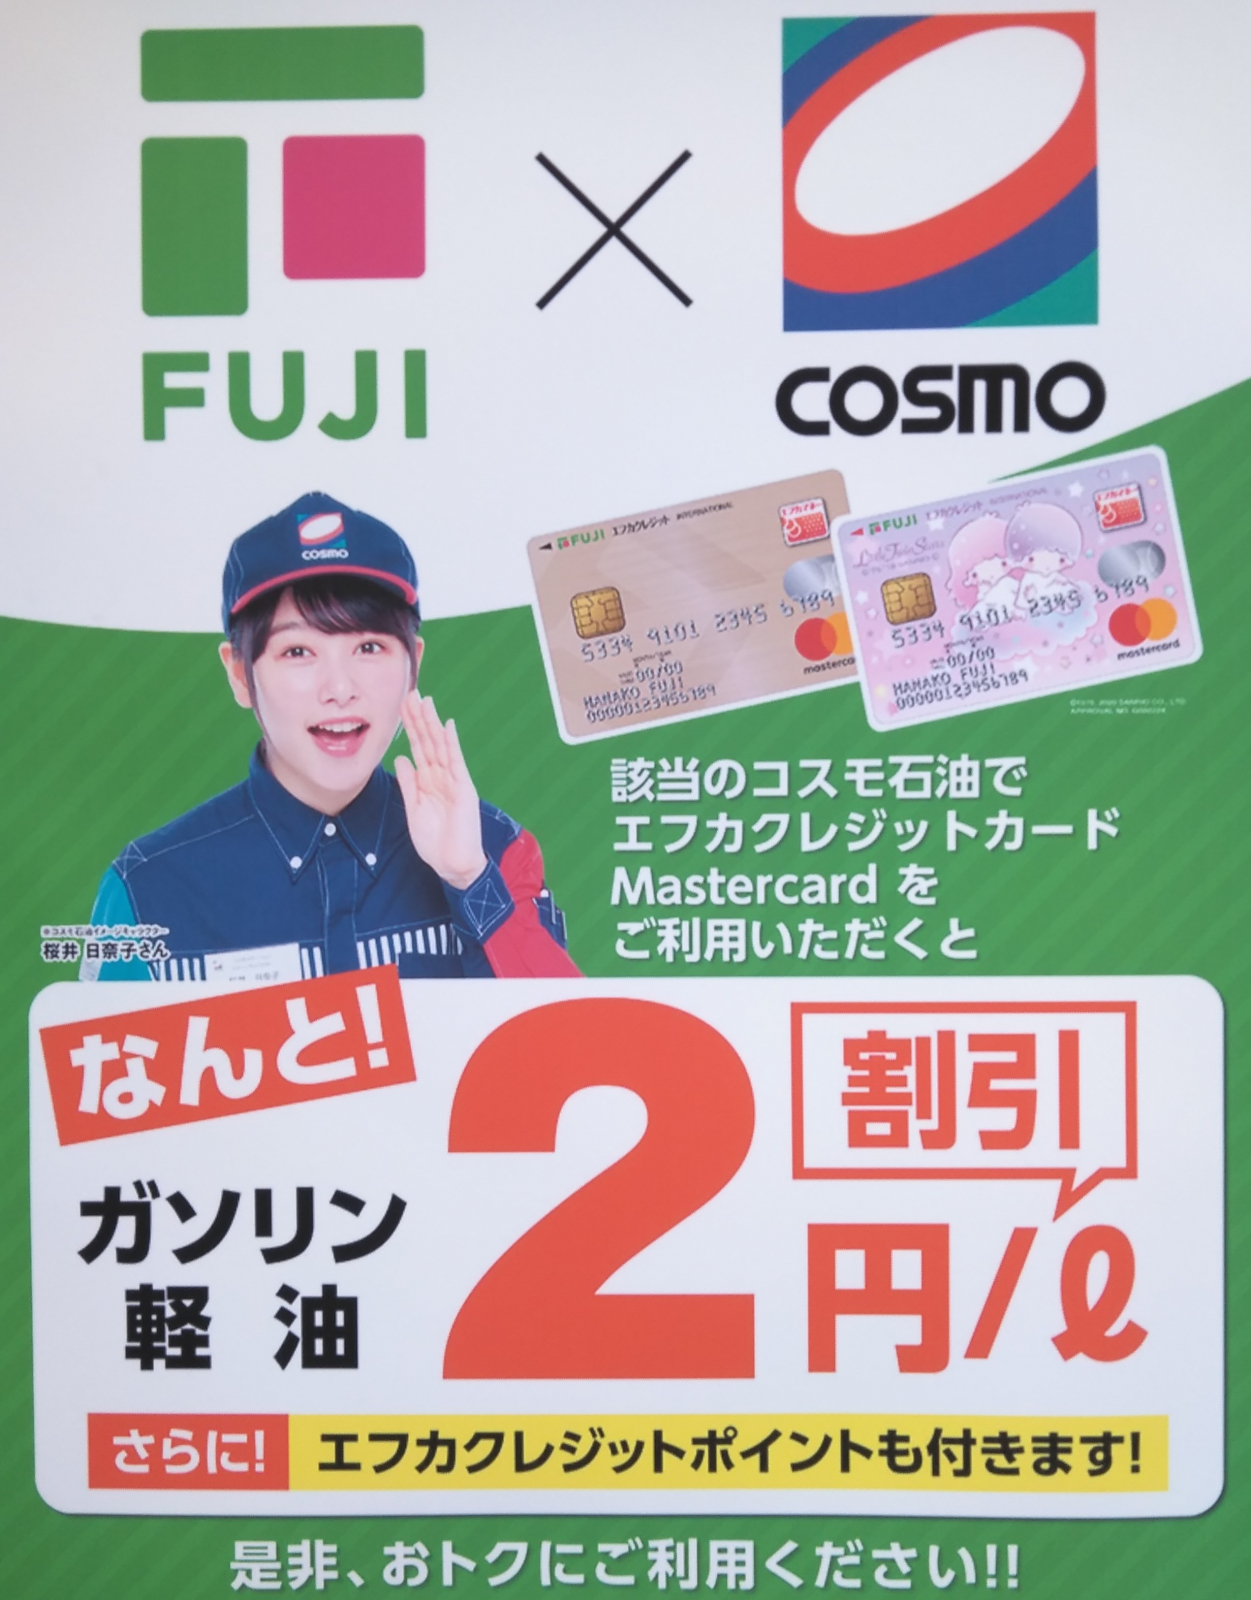 フジグラン東広島 店舗イベント情報一覧 フジのホームページ The Fuji Com